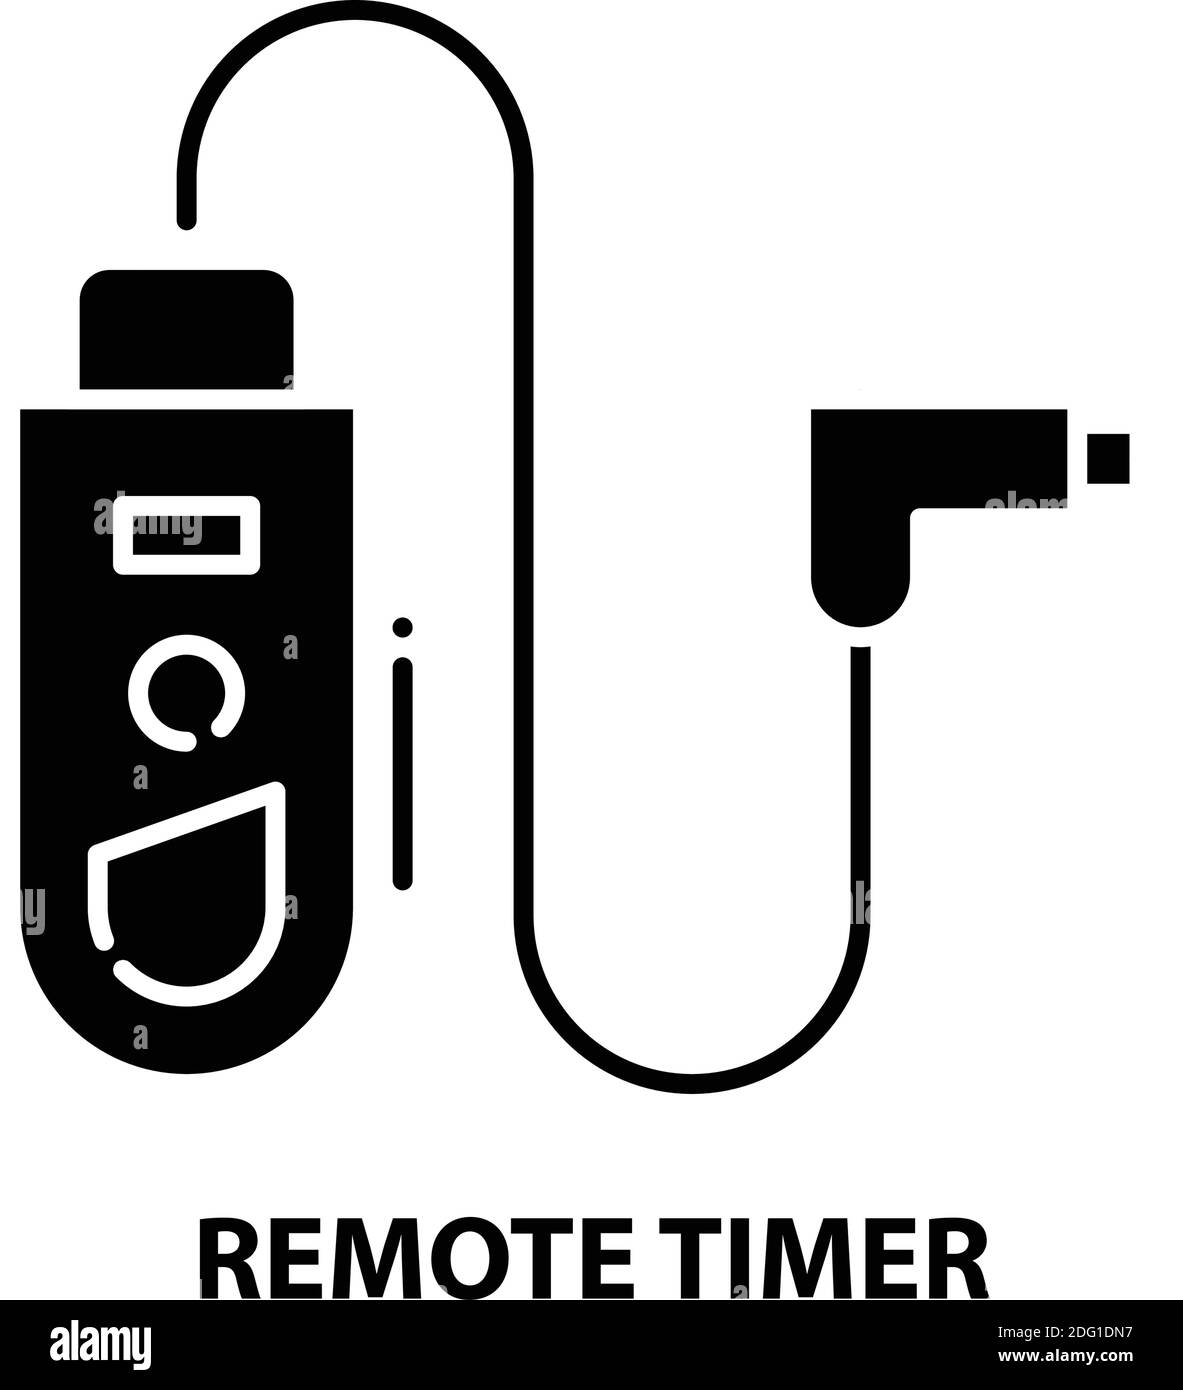 Outdoor-Timer mit Remote-Symbol, schwarzes Vektorschild mit editierbaren Konturen, Konzeptdarstellung Stock Vektor